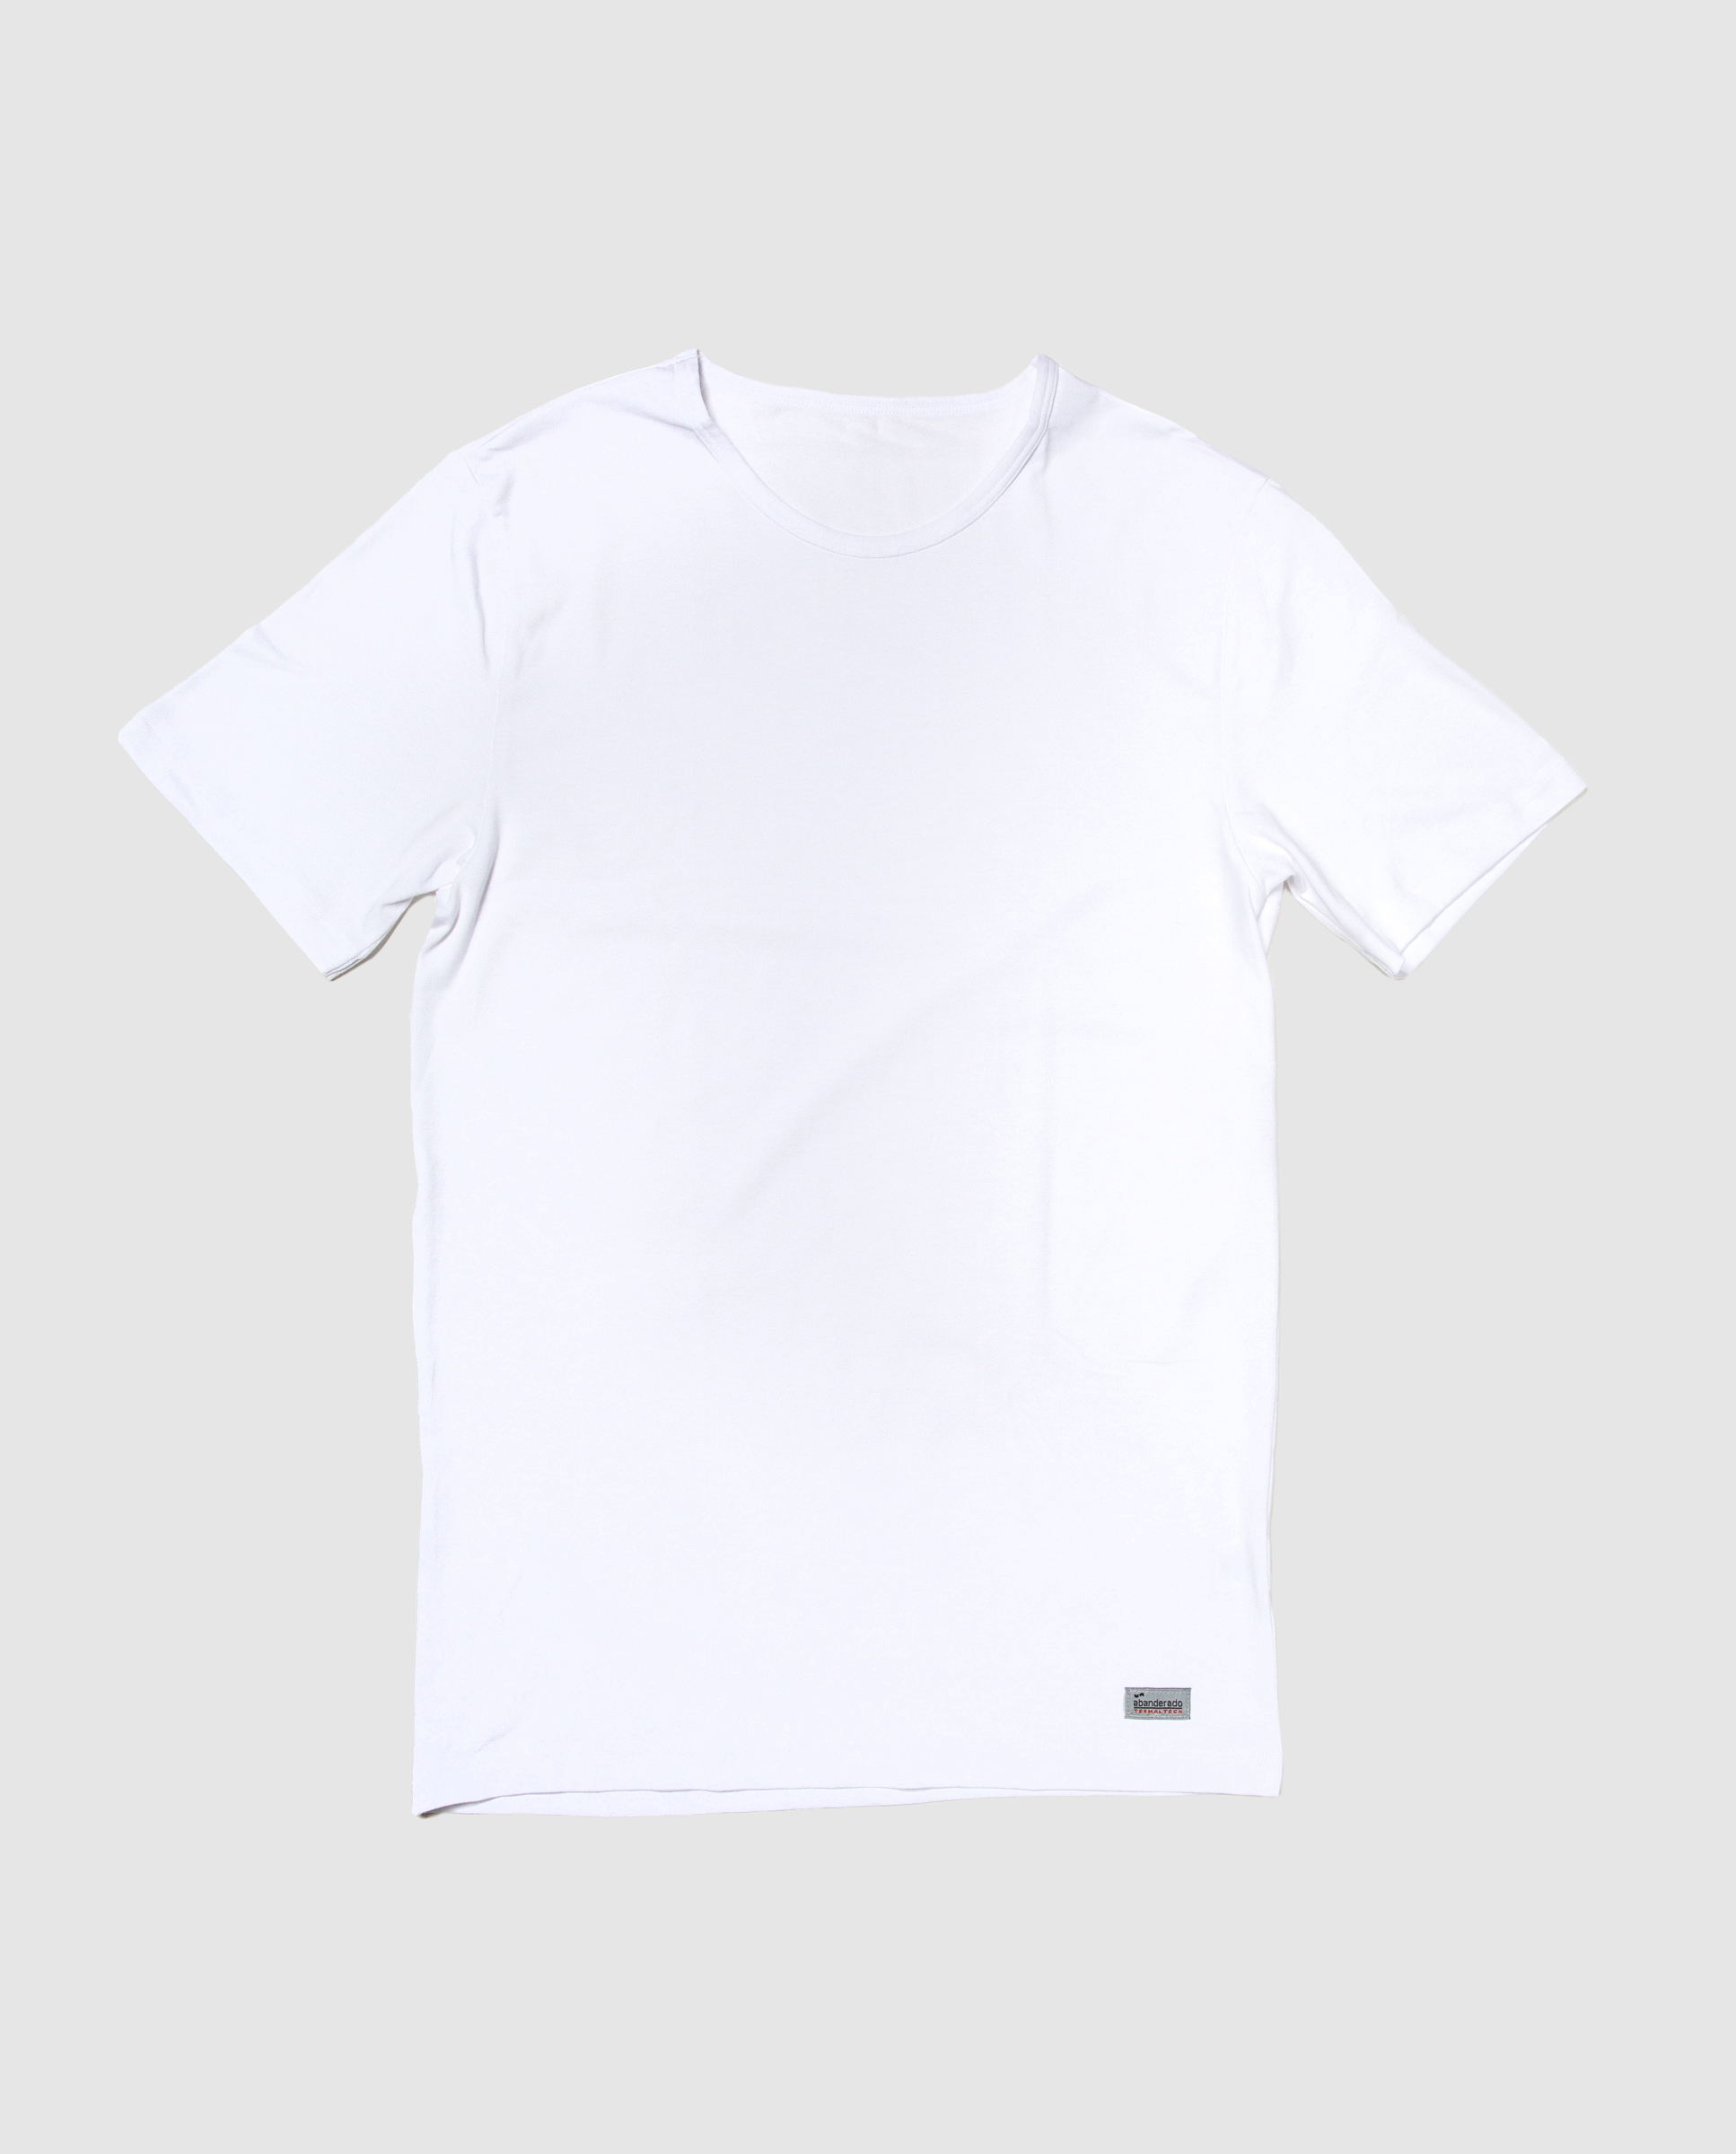 Camiseta térmica hombre manga corta Abanderado - Venca - 049047